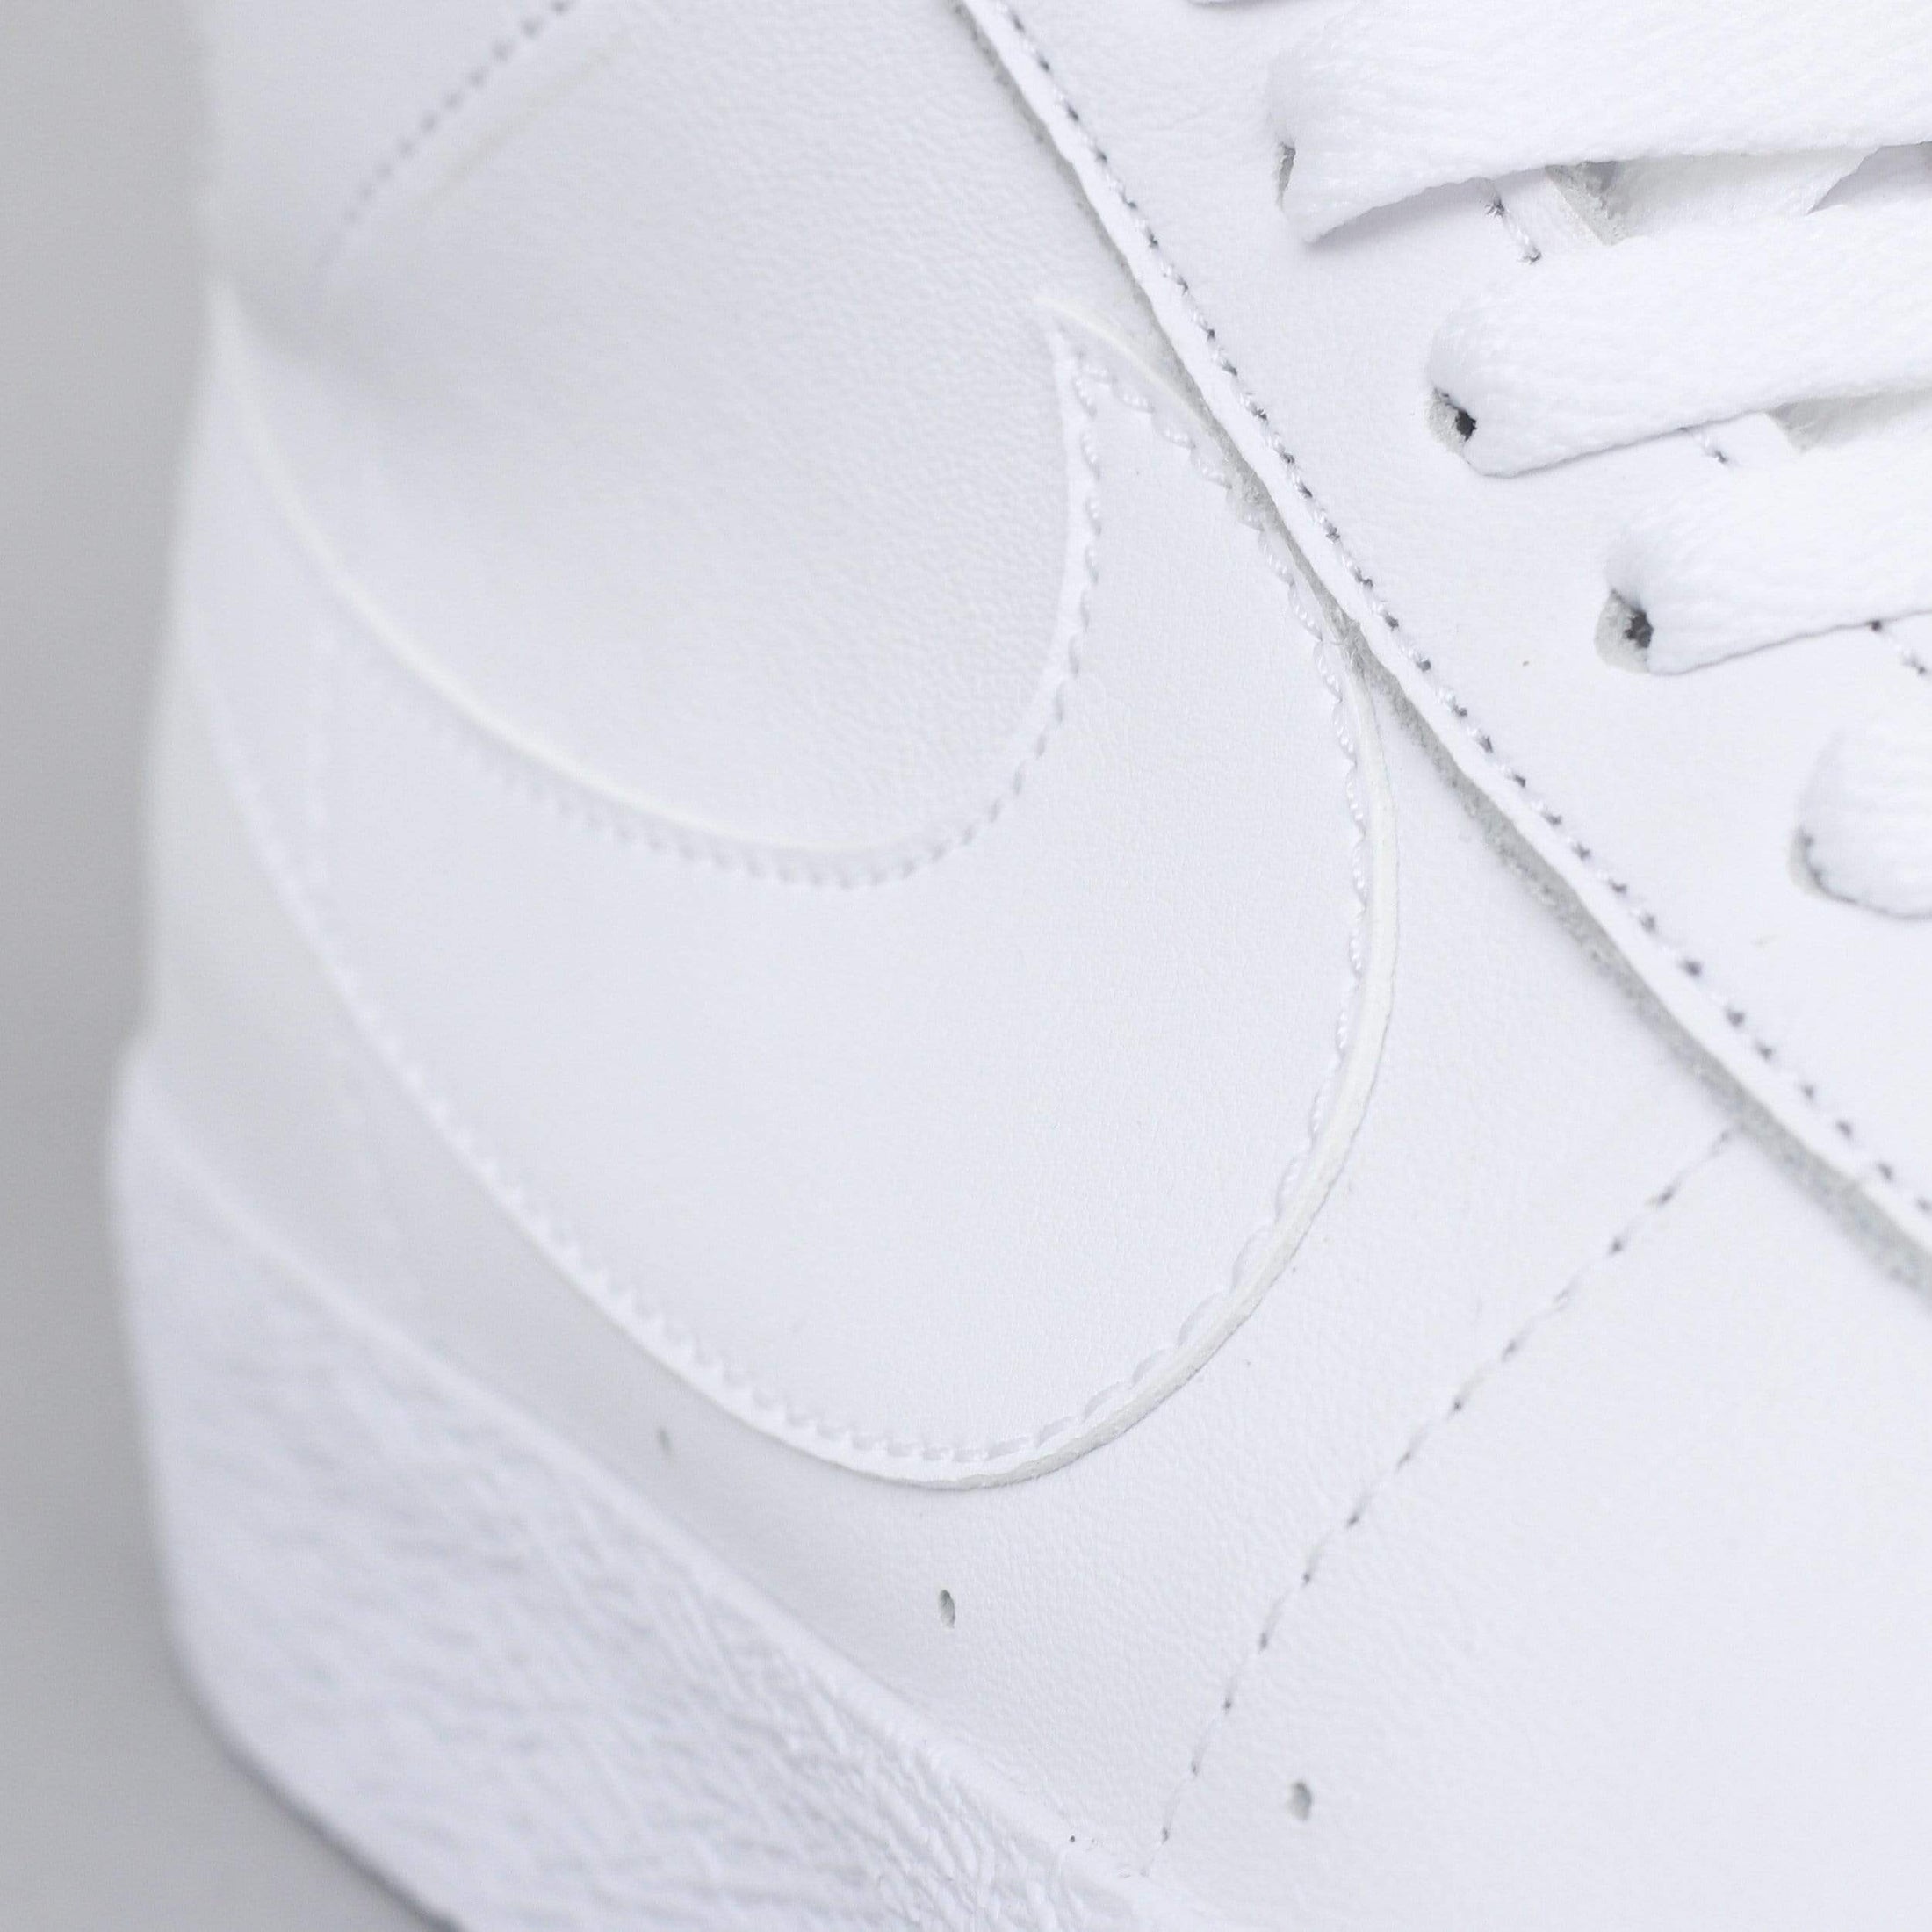 Nike SB Blazer Mid Shoes White / White - White